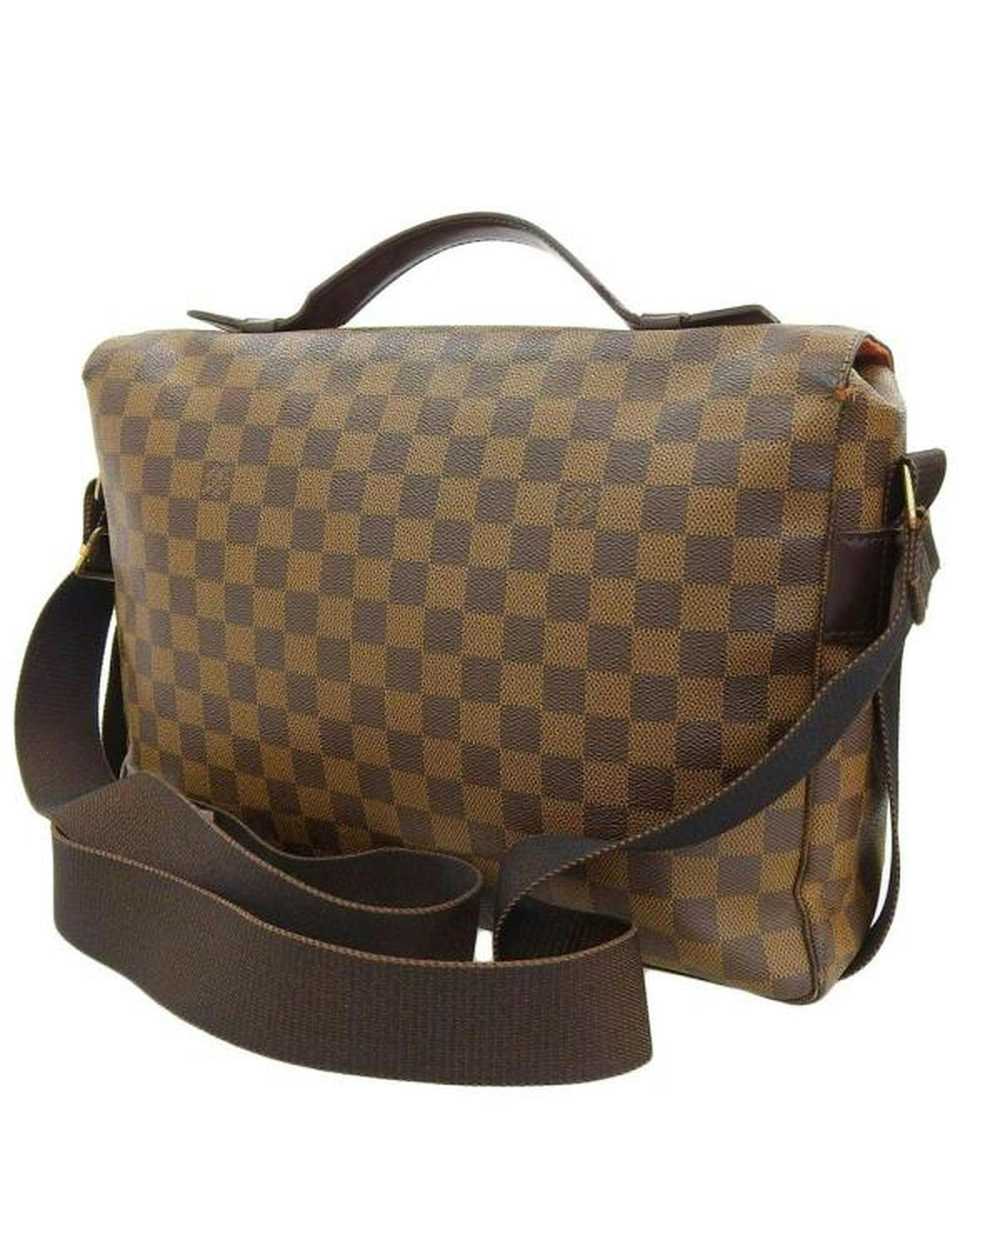 Louis Vuitton Designer Damier Ebene Shoulder Bag - image 2